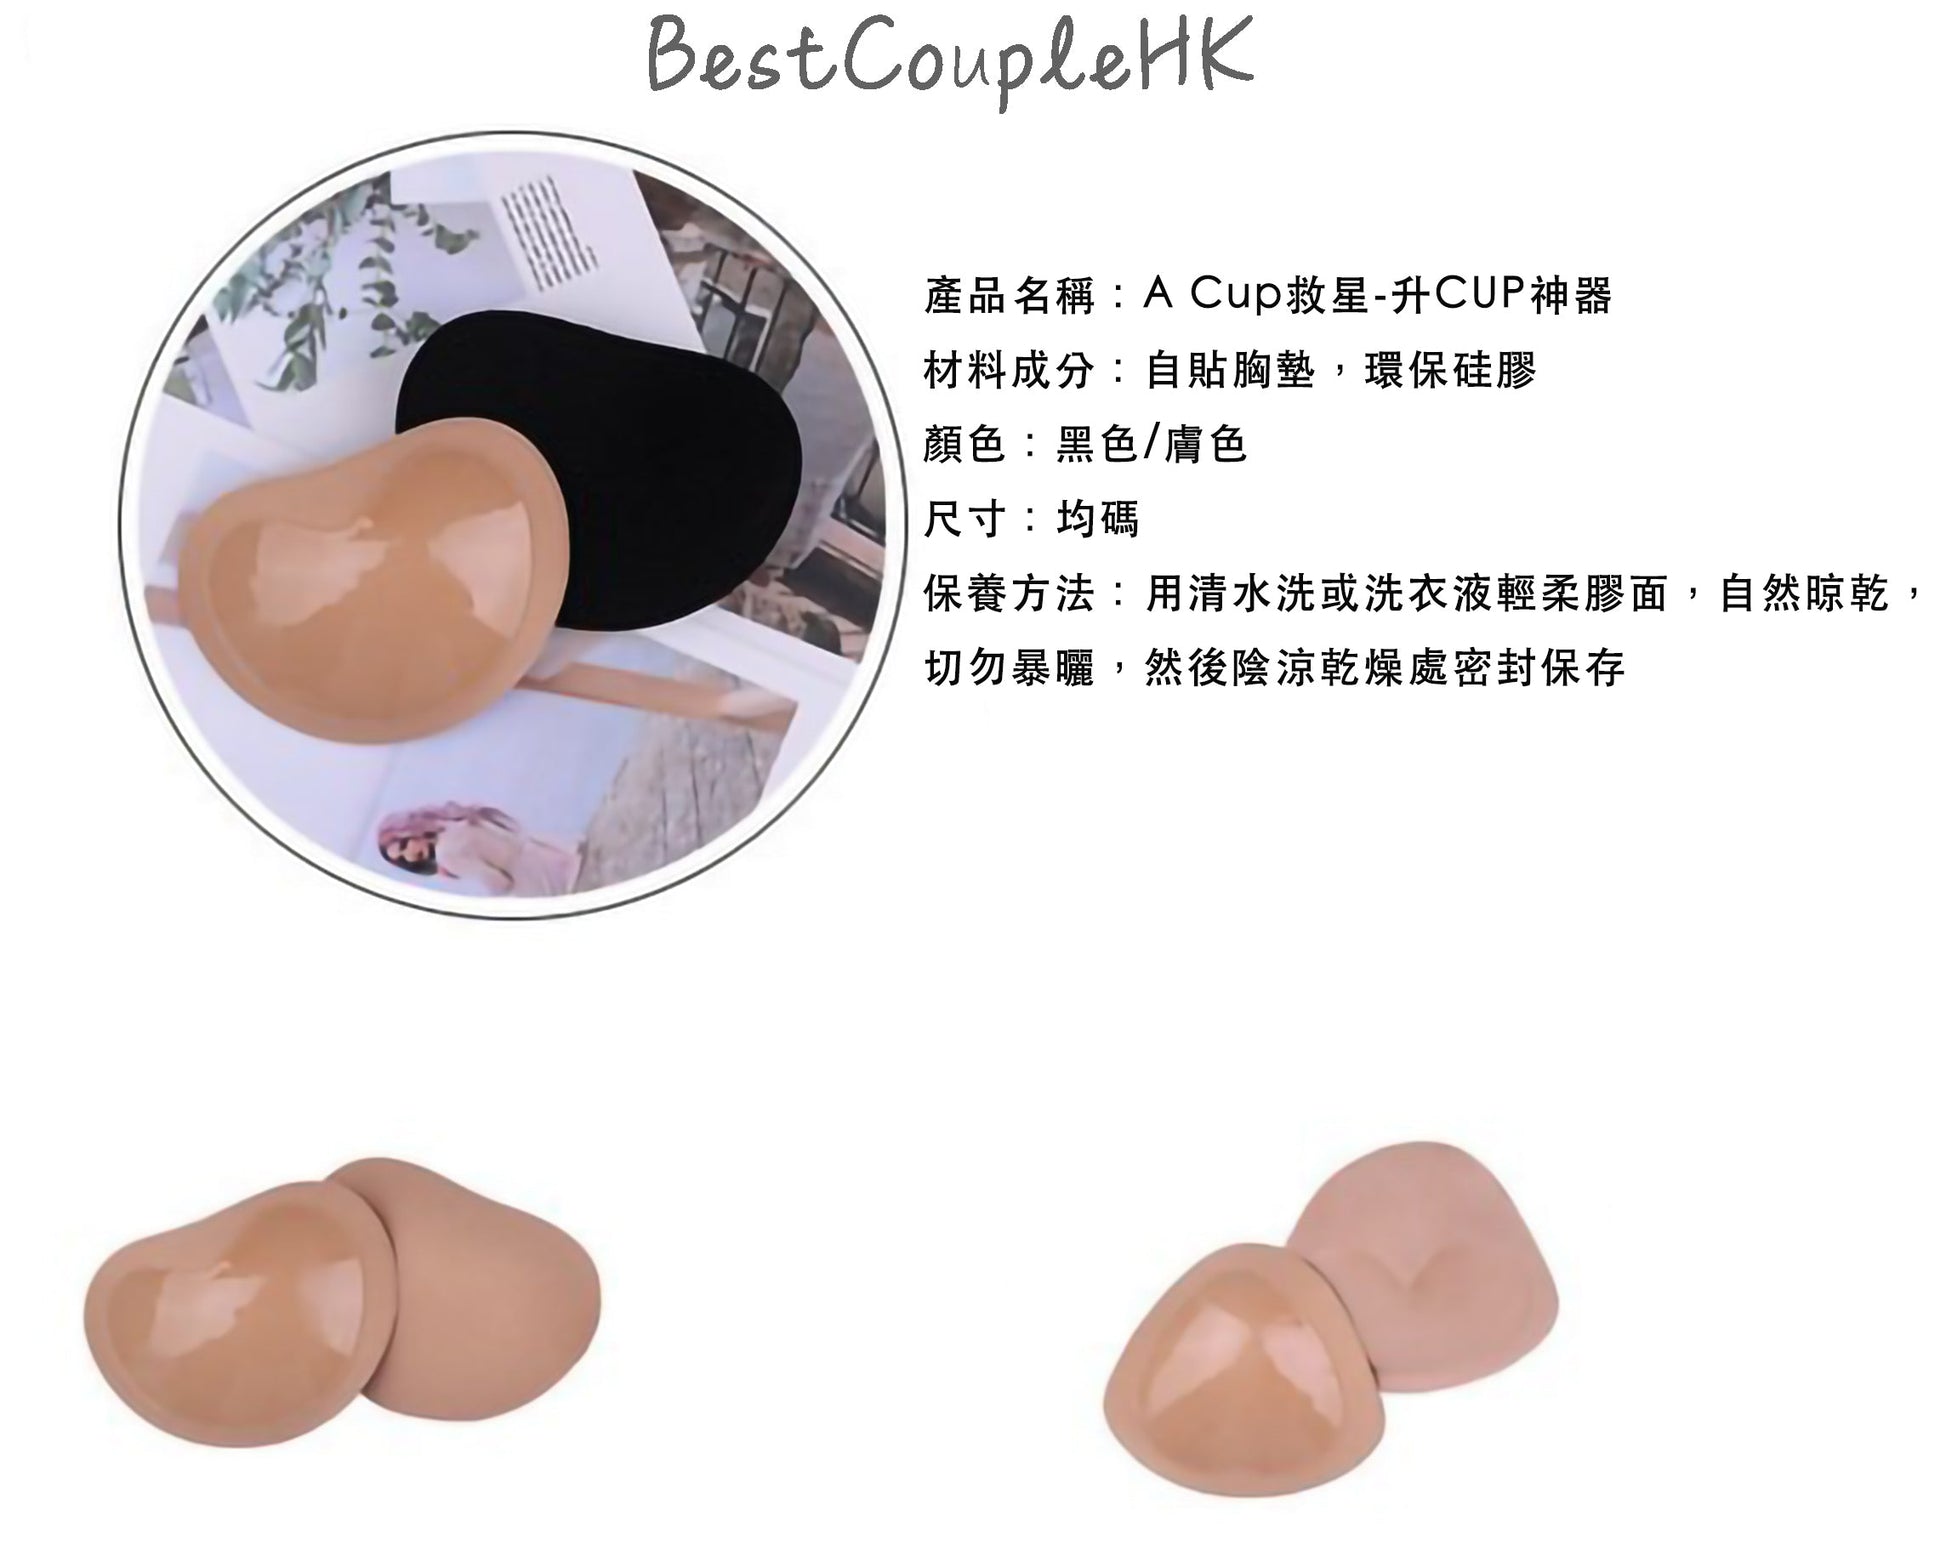 A CUP救星-升CUP神器 （可重用） - 情趣內衣 BestCouple HongKong  情趣內衣 性感睡衣 情趣用品